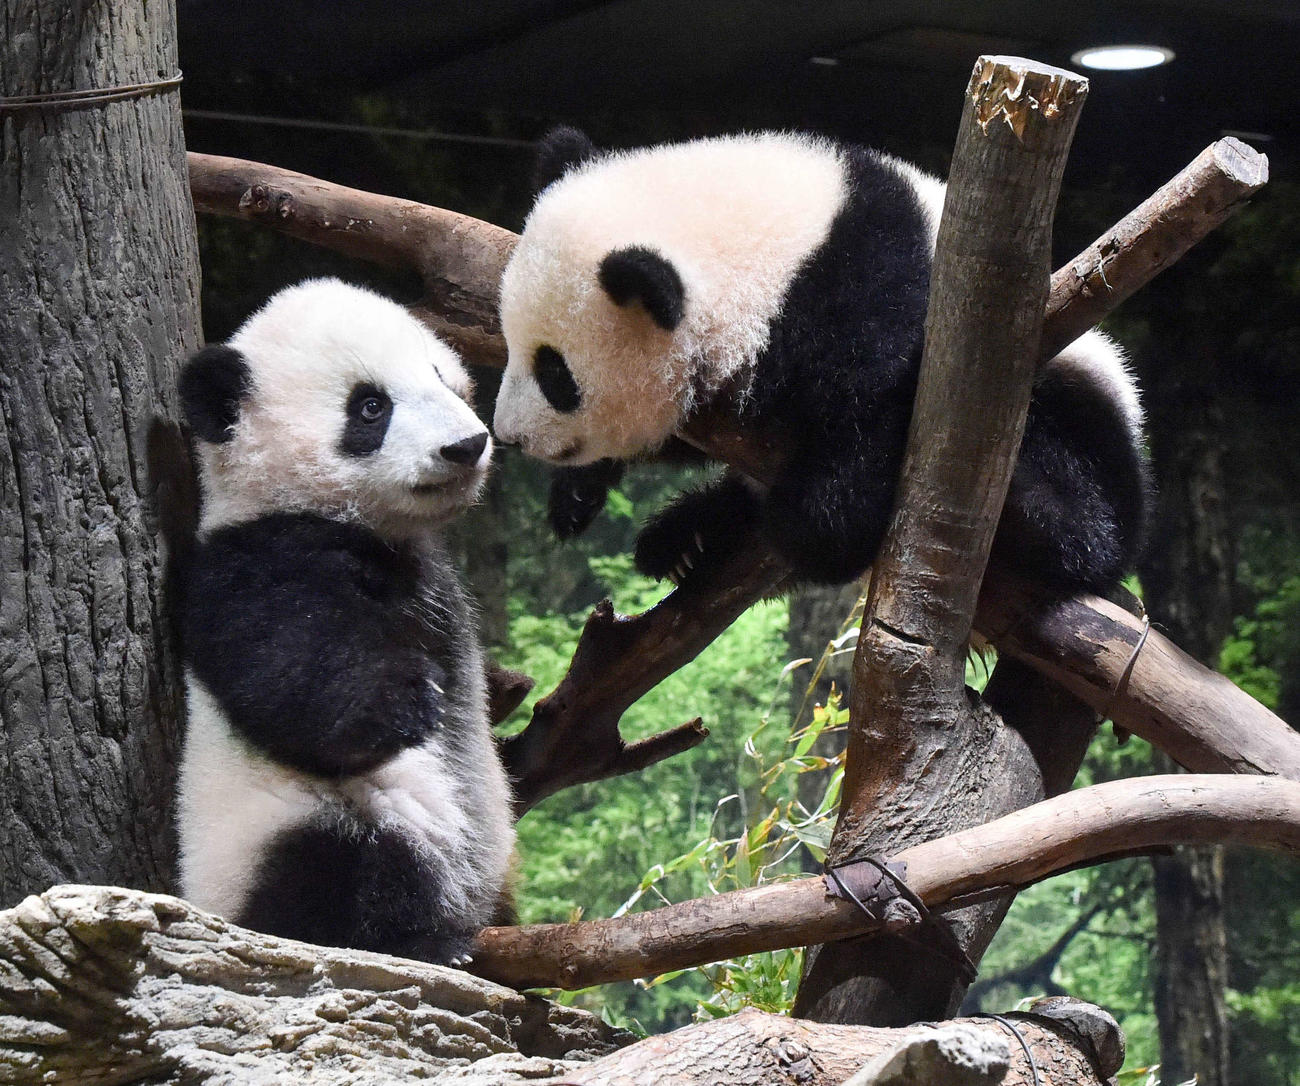 昨年12月27日に撮影された上野動物園の双子のジャイアントパンダ。左が雄のシャオシャオ、右が雌のレイレイ。187日齢（東京動物園協会提供）